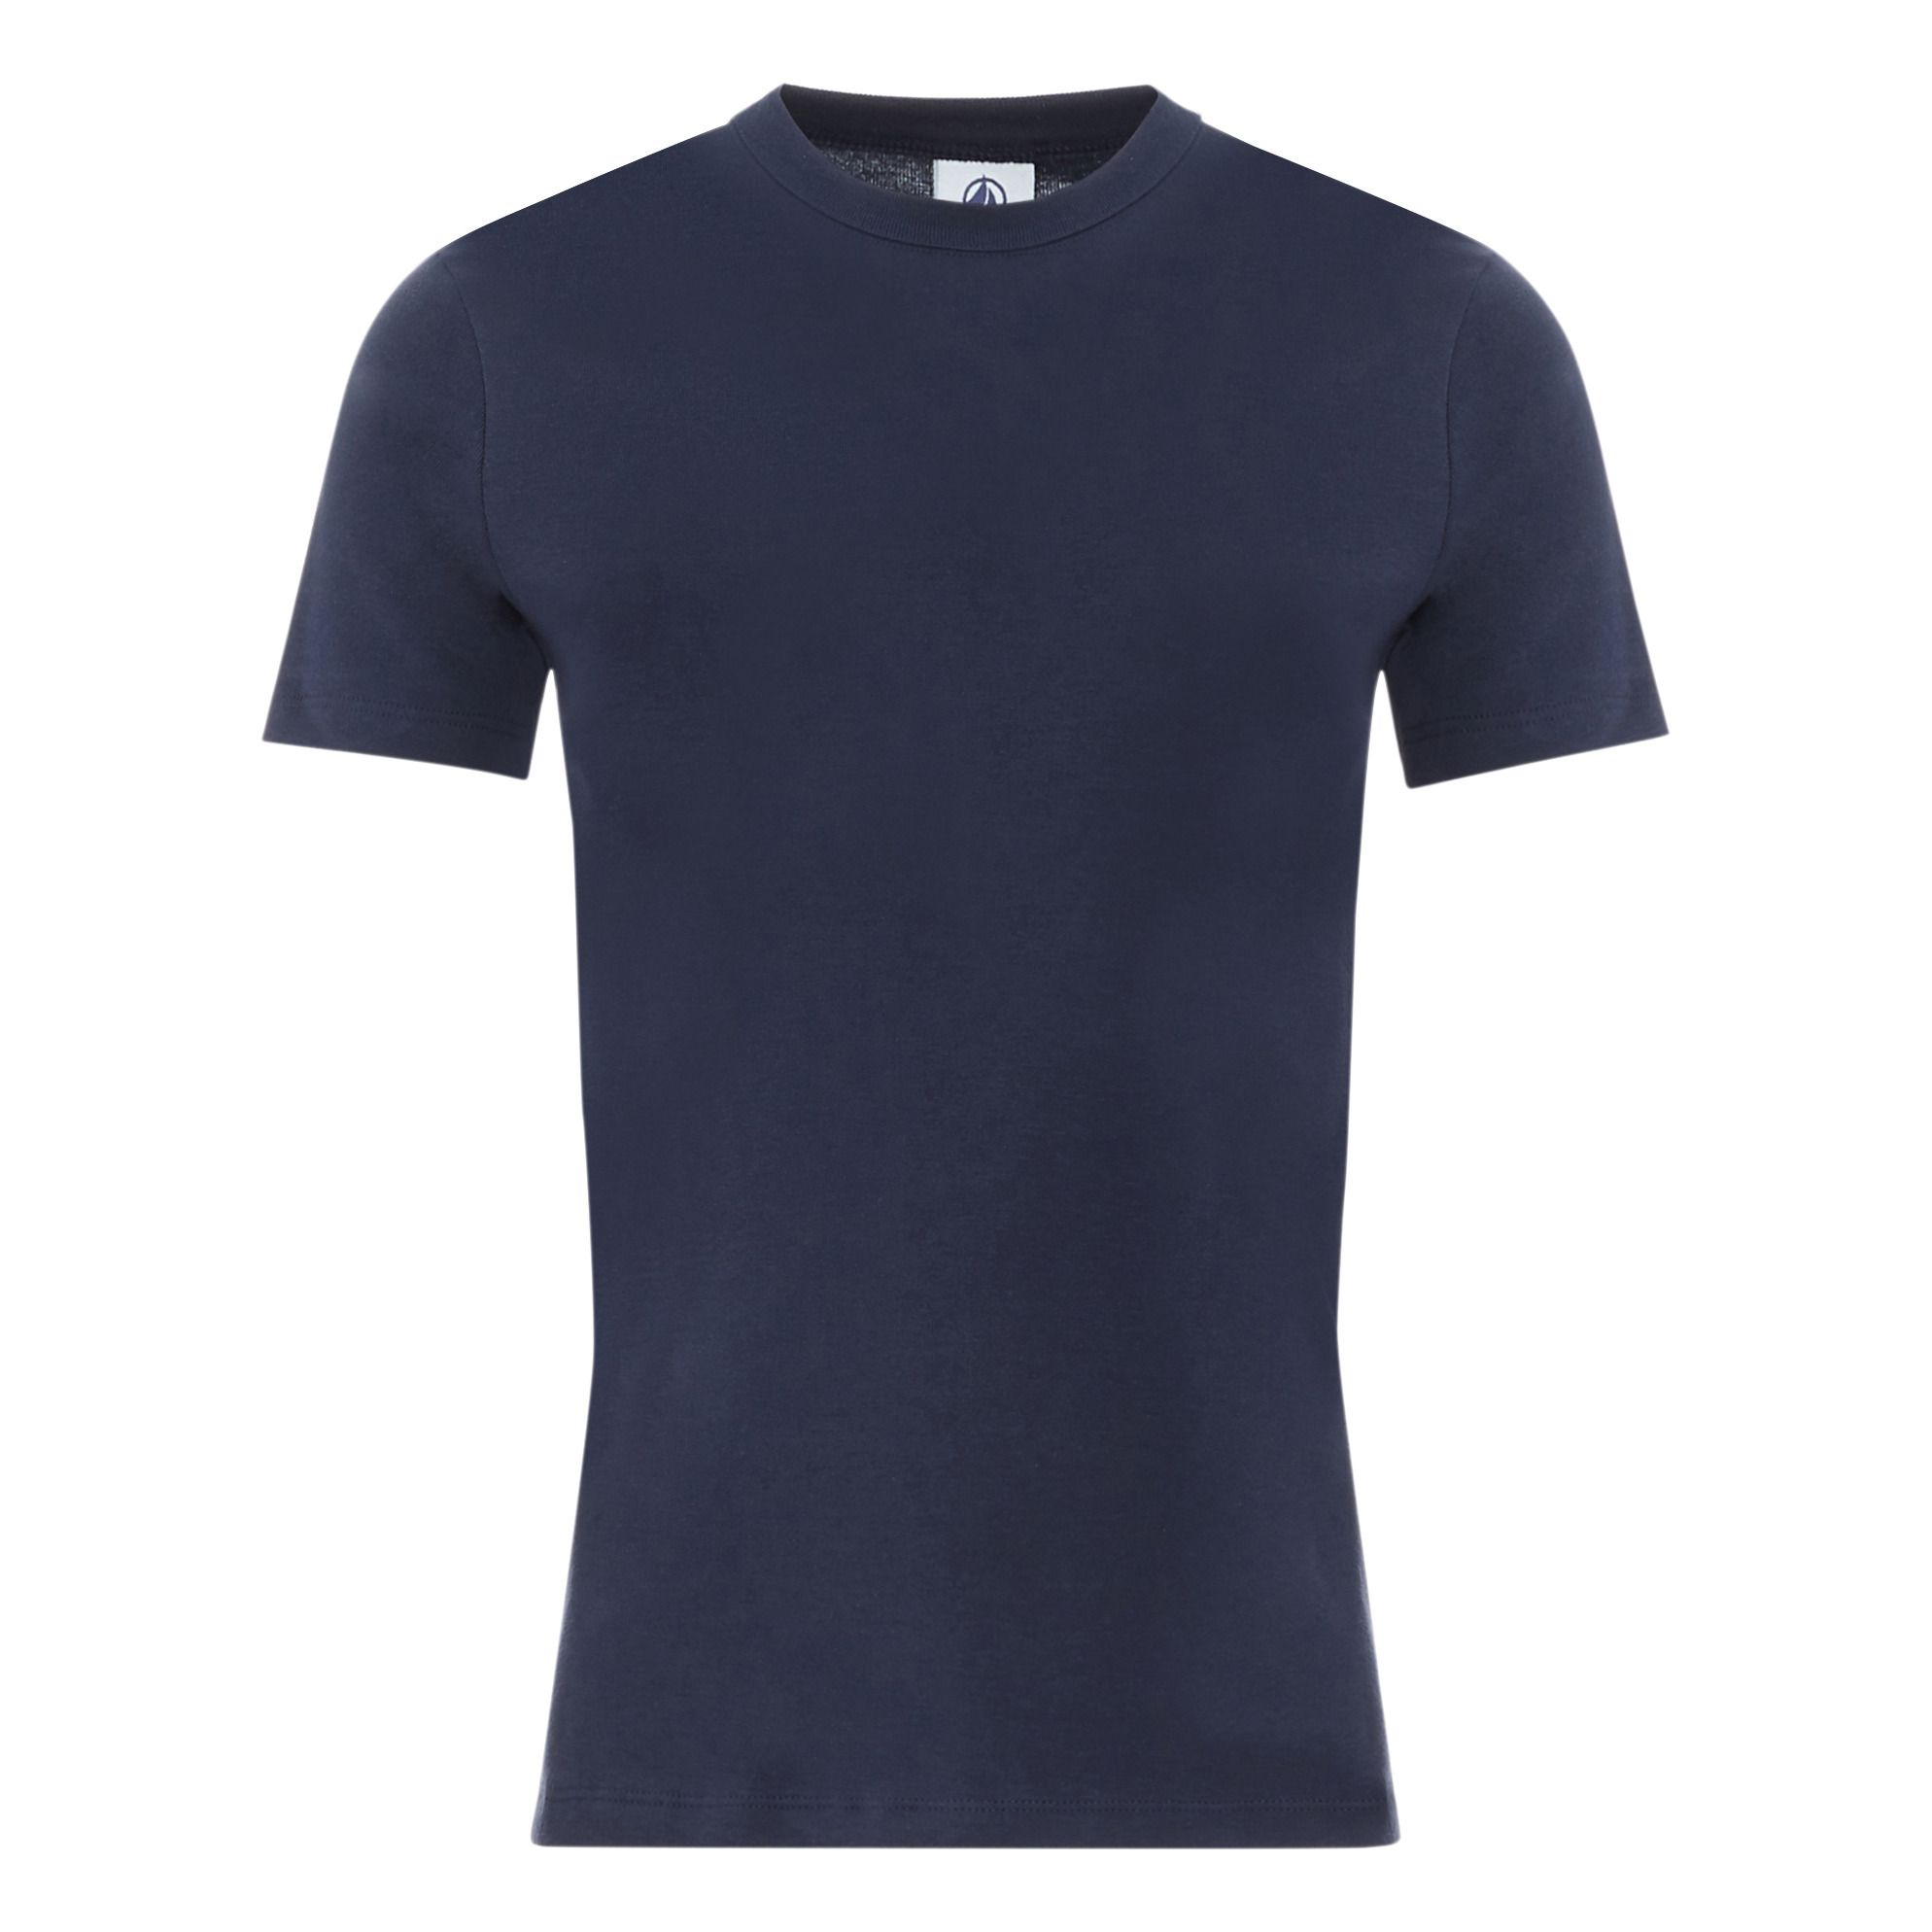 Petit Bateau - T-Shirt Uni - Collection Adulte - - Femme - Bleu marine